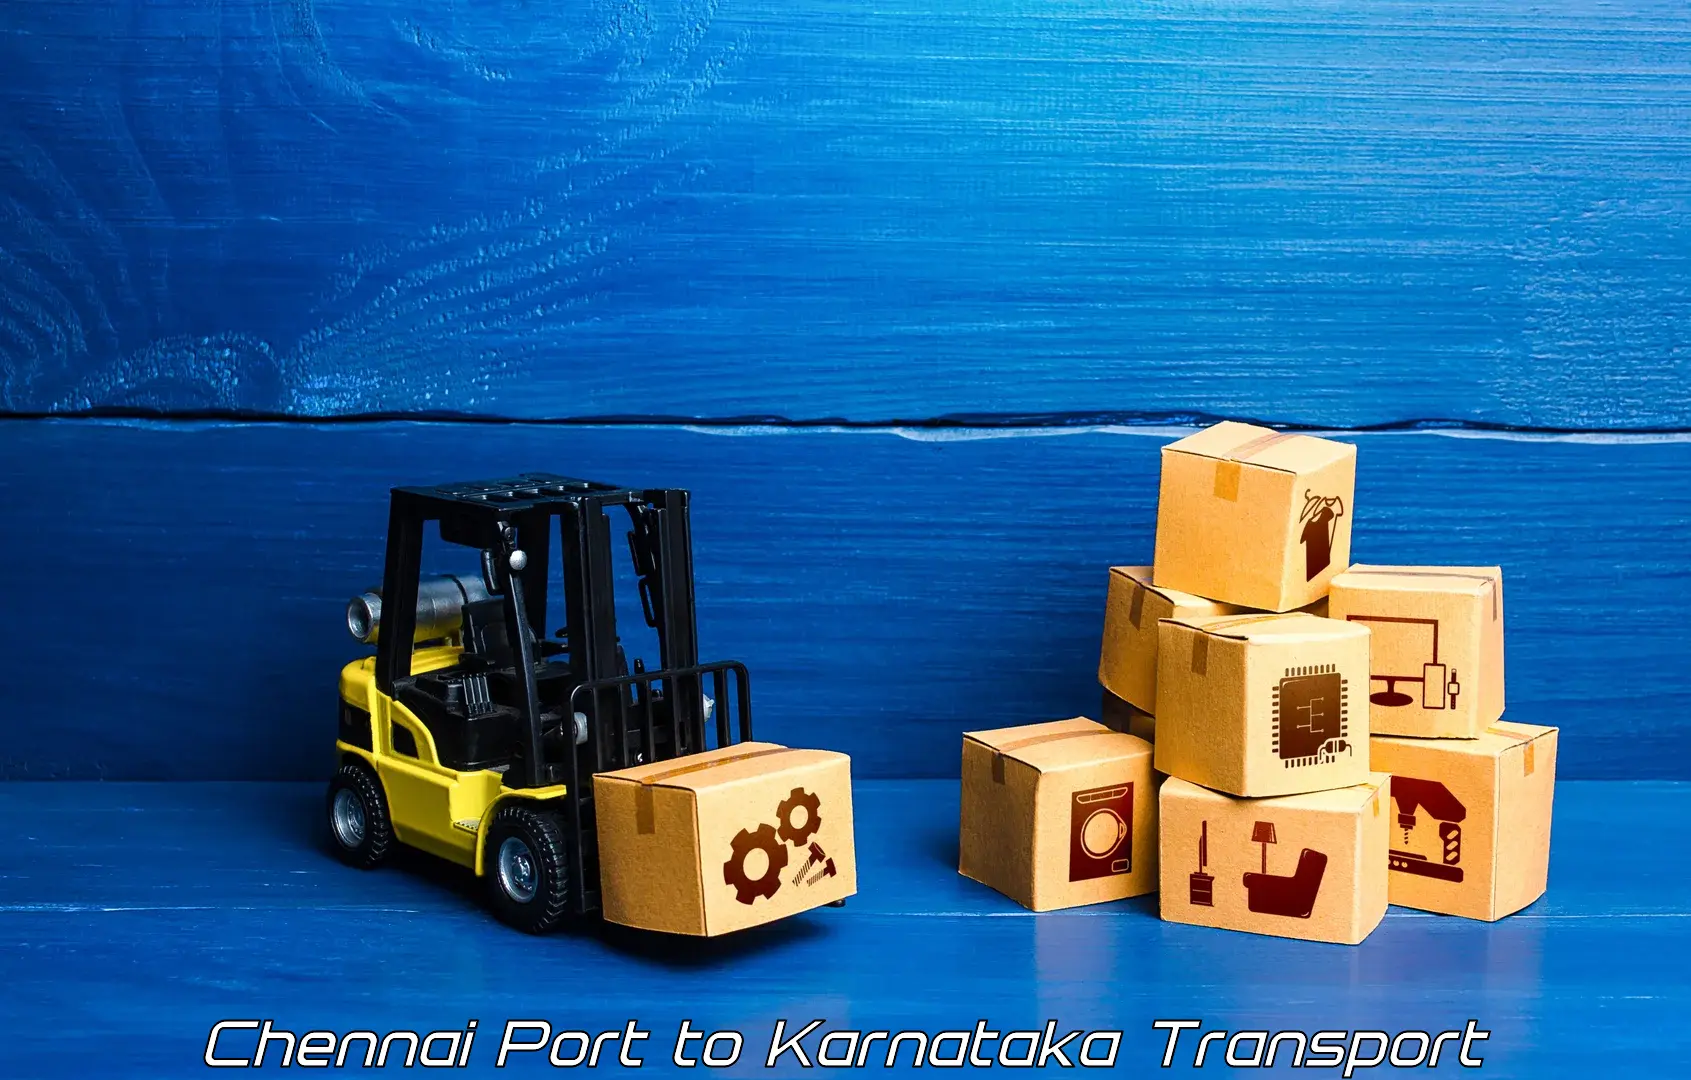 Commercial transport service Chennai Port to Srirangapatna